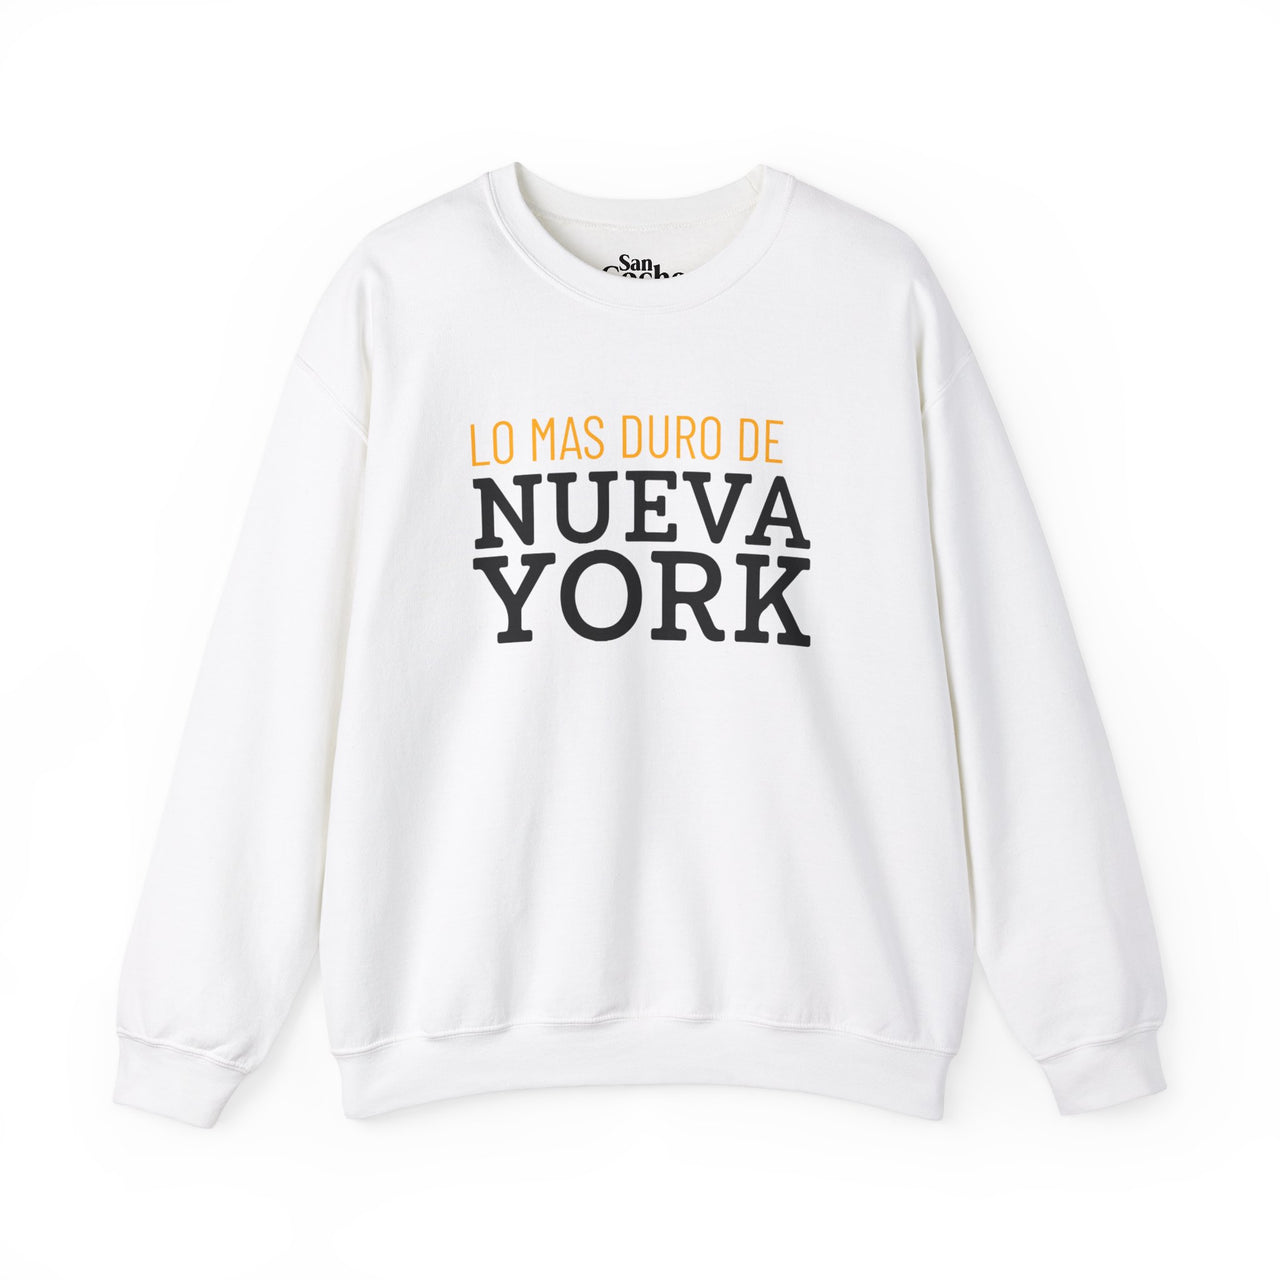 Los Mas Duro De Nueva York Oversized Sweatshirt